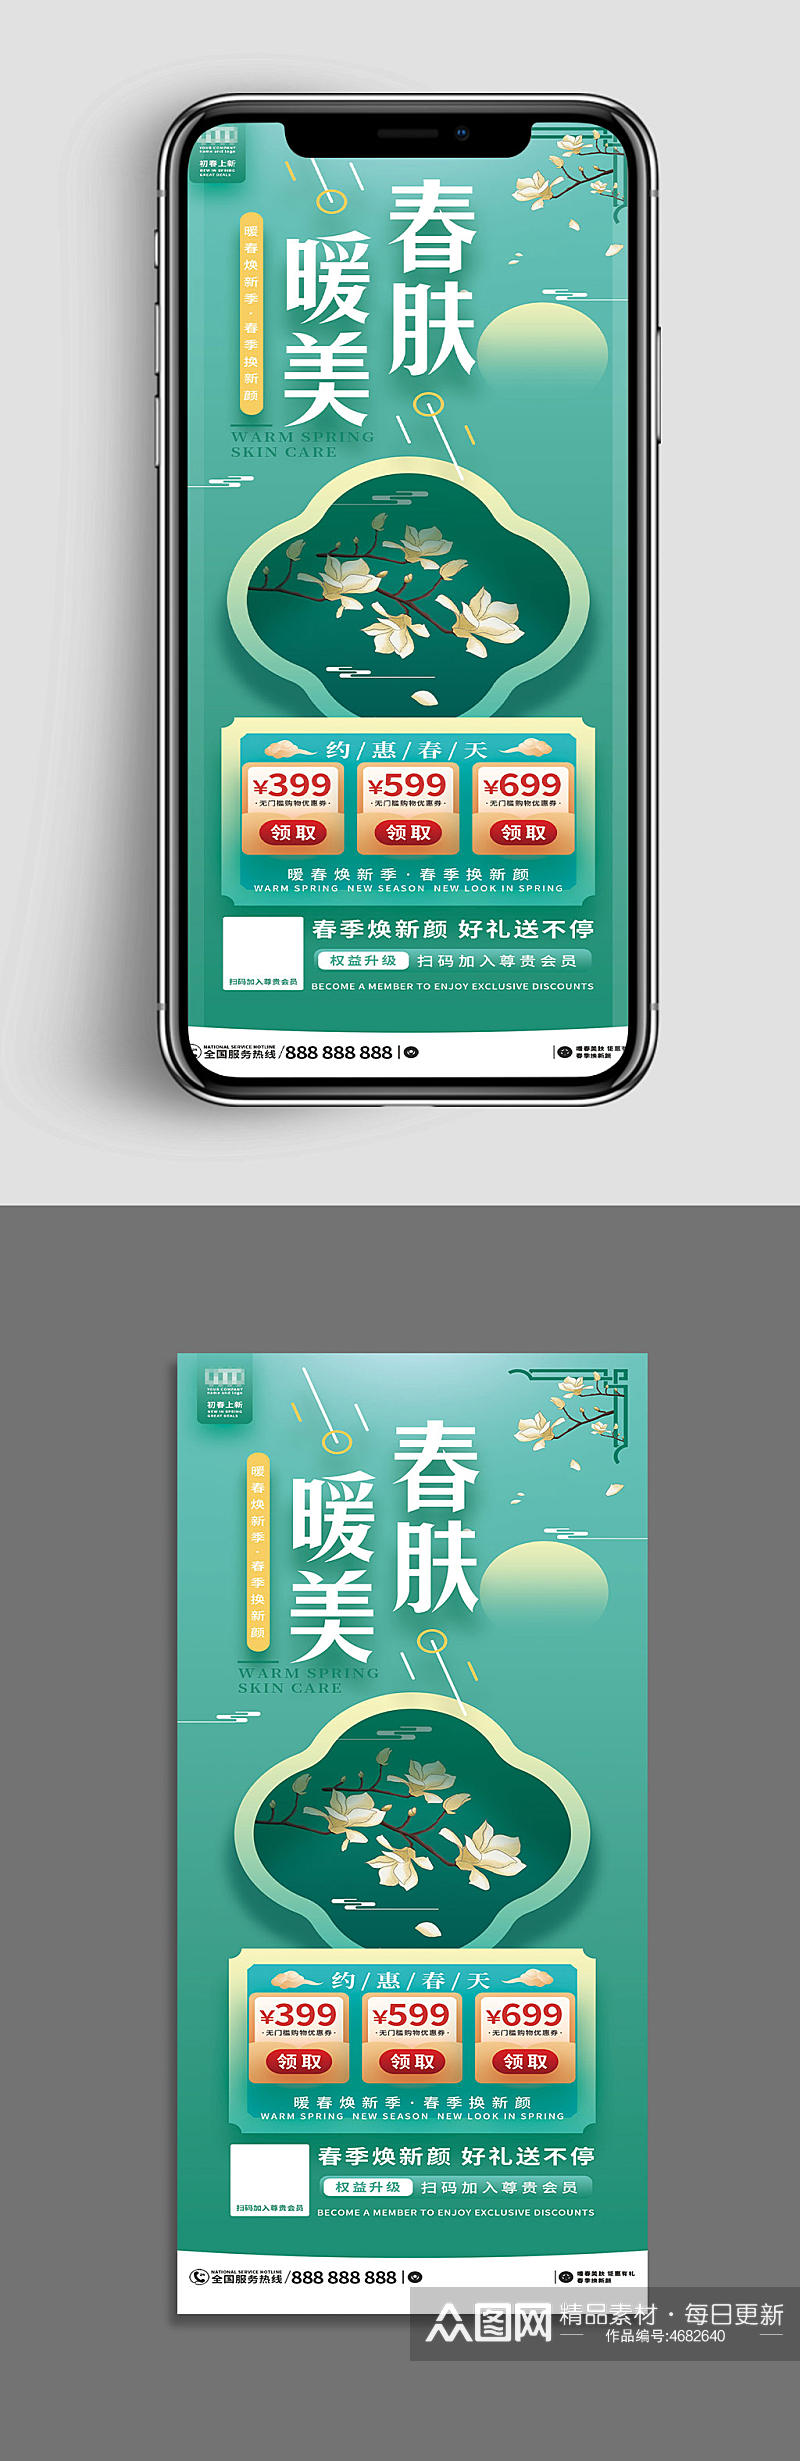 春暖美肤中国风医美手机海报模板素材